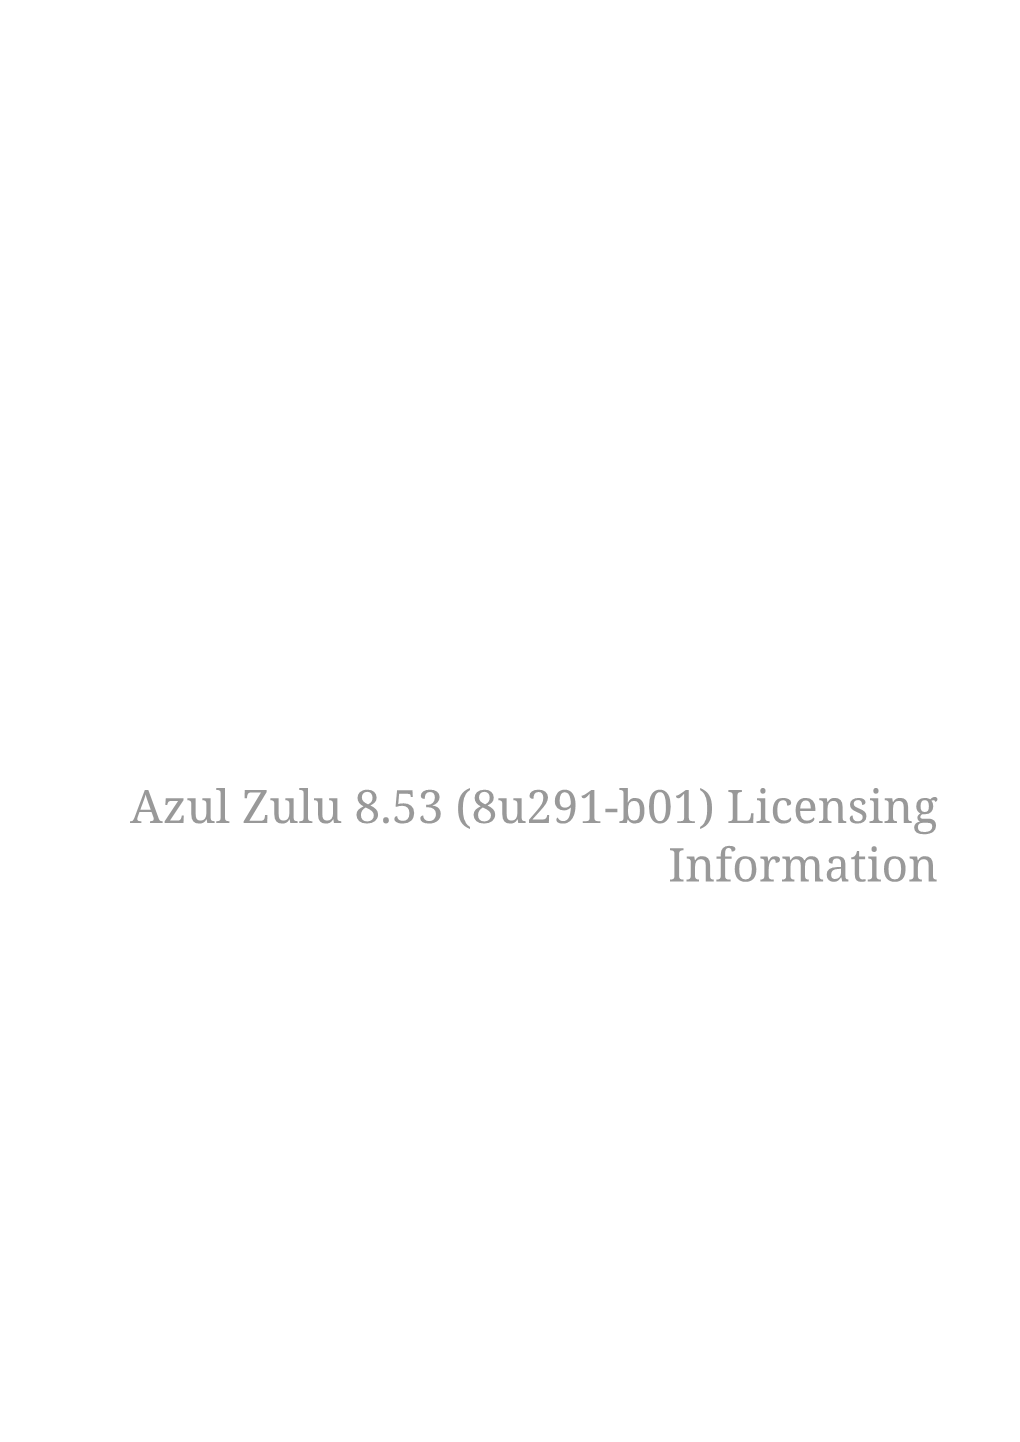 Azul Zulu 8.53 (8U291-B01) Licensing Information Introduction